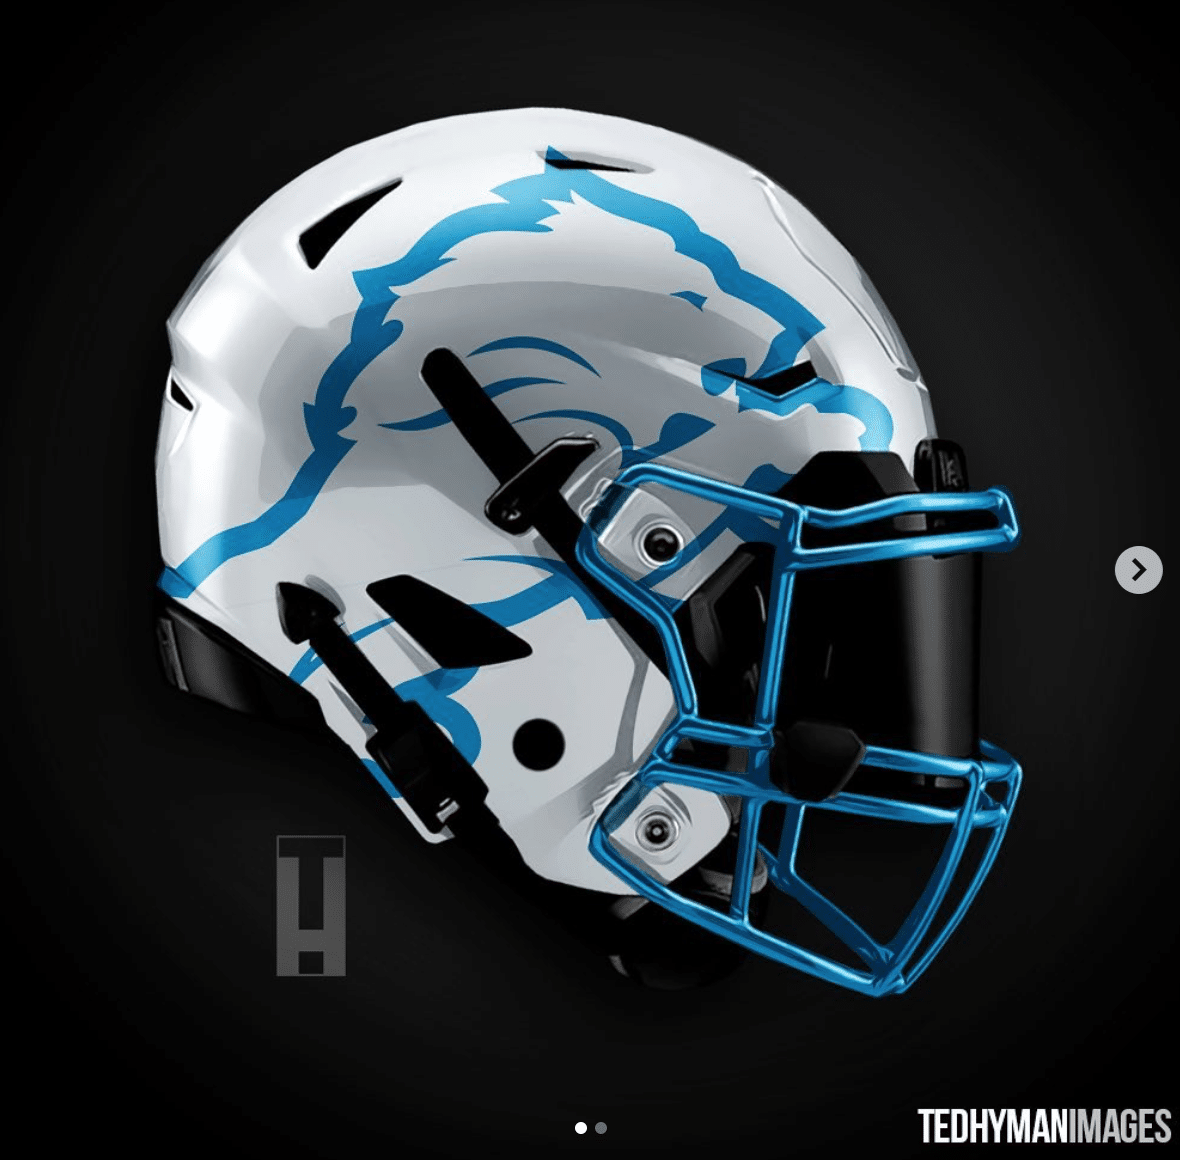 Designer creates two Detroit Lions concept helmets Detroit Sports Nation